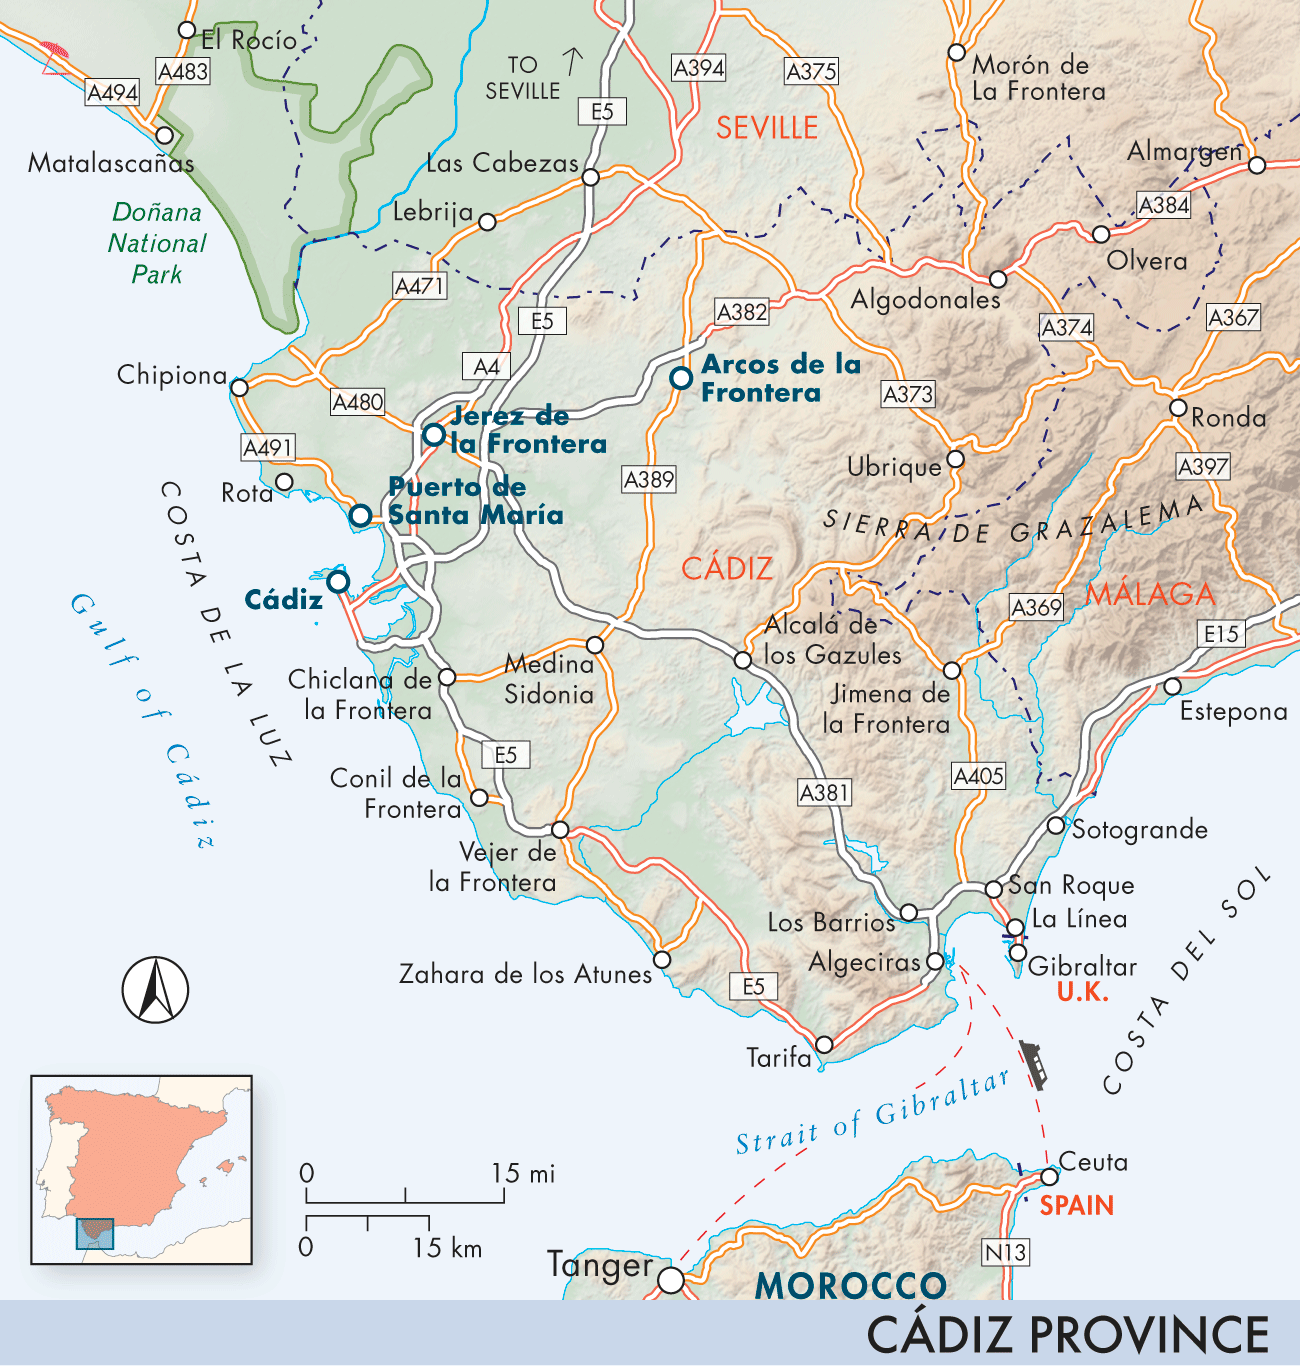 Cádiz Province